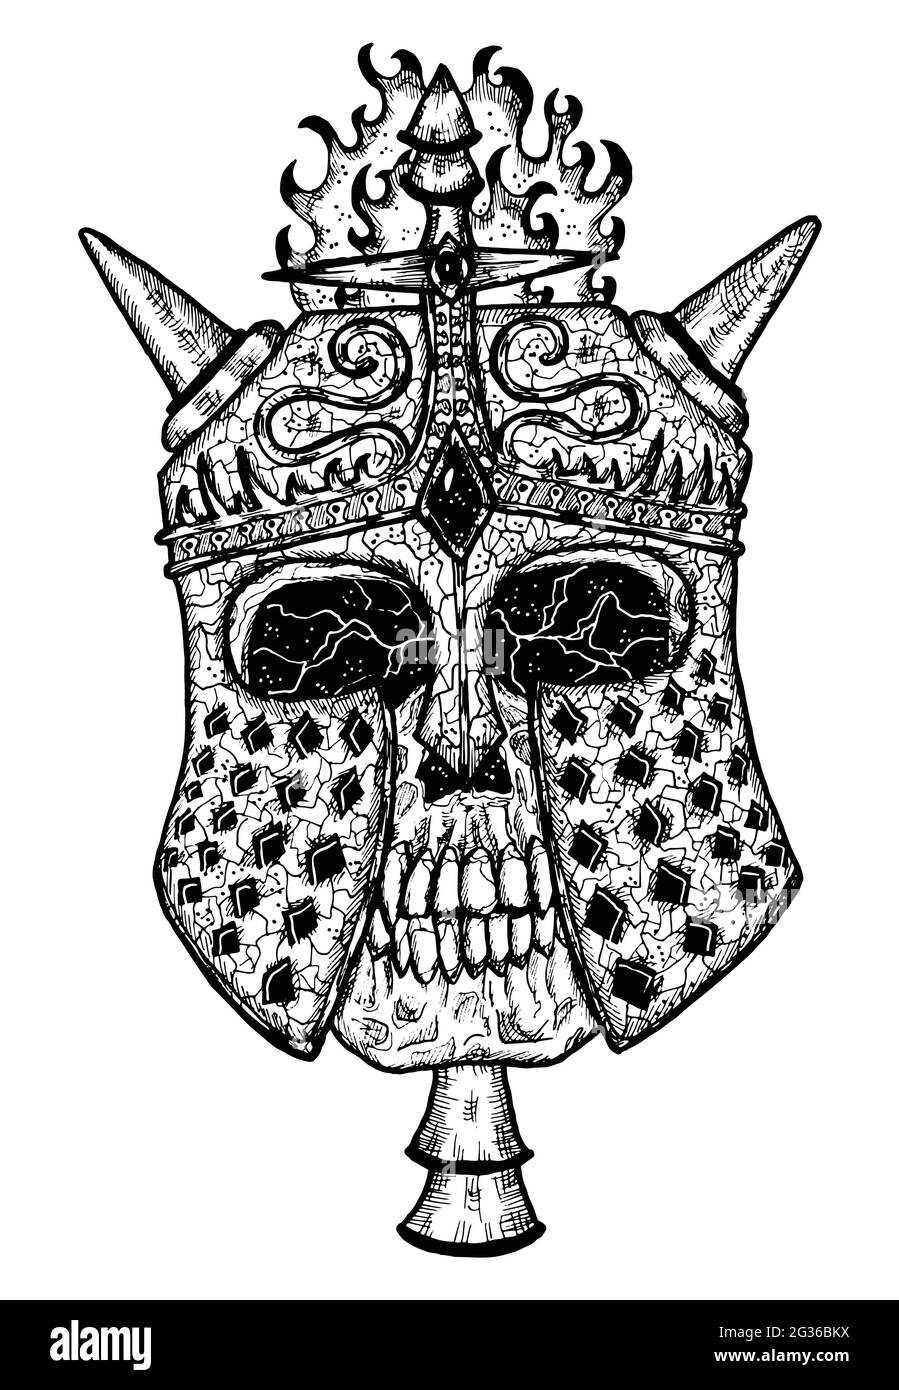 Illustration noire et blanche effrayante du crâne vectoriel portant une barre à chevalier avec cornes. Dessin isolé mystique pour Halloween avec ésotérique, gothique, occulte Illustration de Vecteur